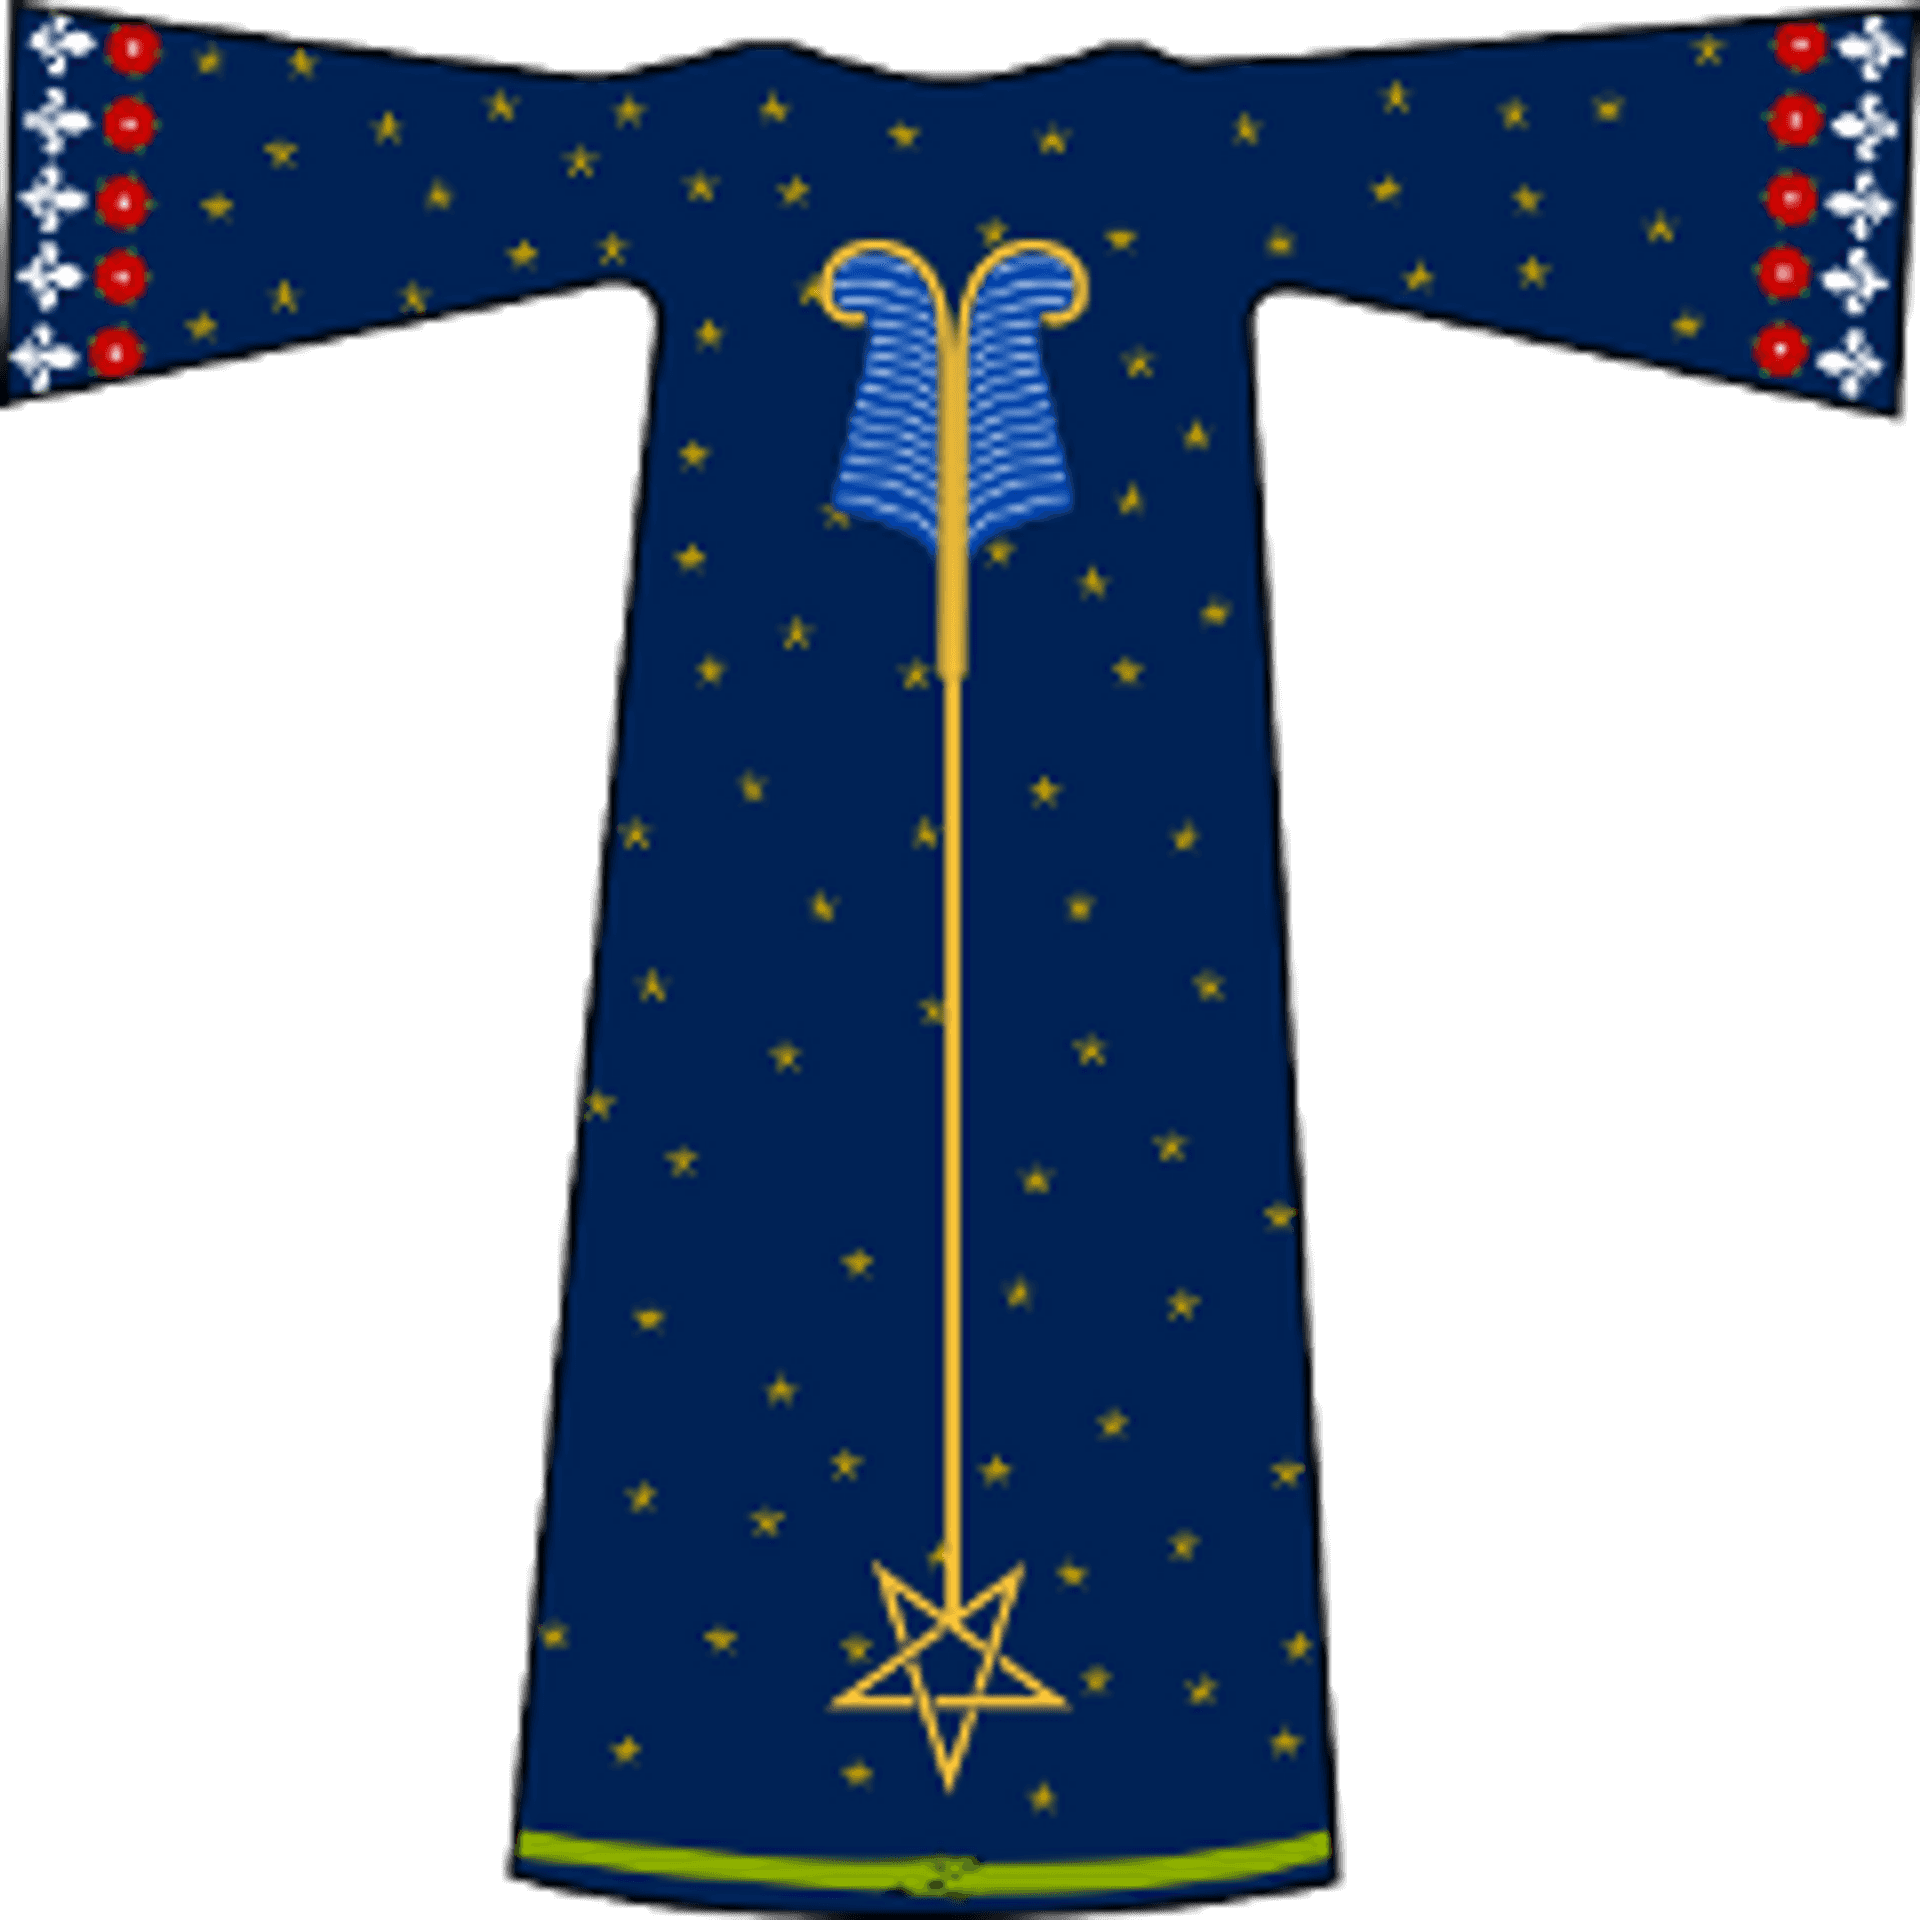 Outer College Magister Templi robe design